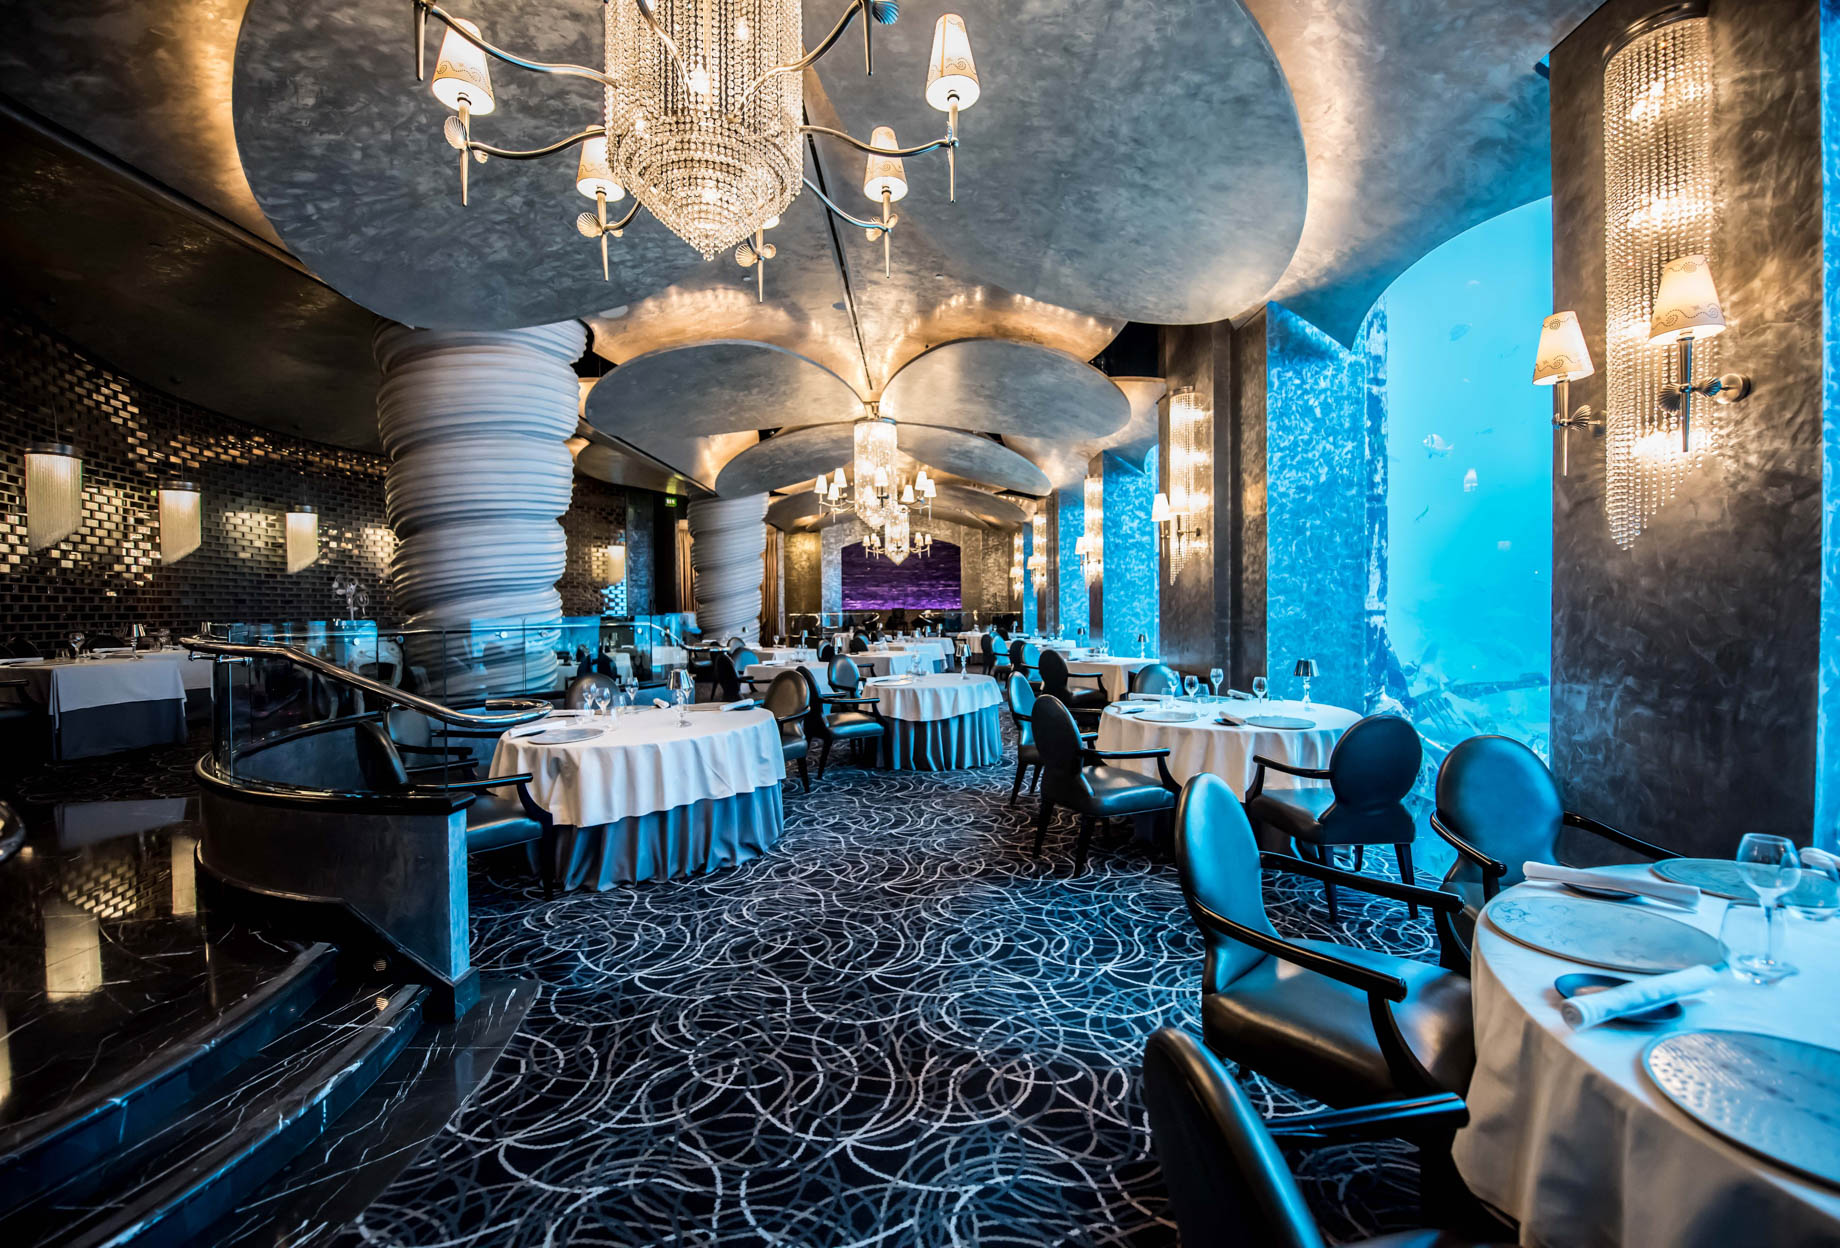 Atlantis The Palm Resort – Crescent Rd, Dubai, UAE – Ossiano Restaurant Underwater Aquarium View